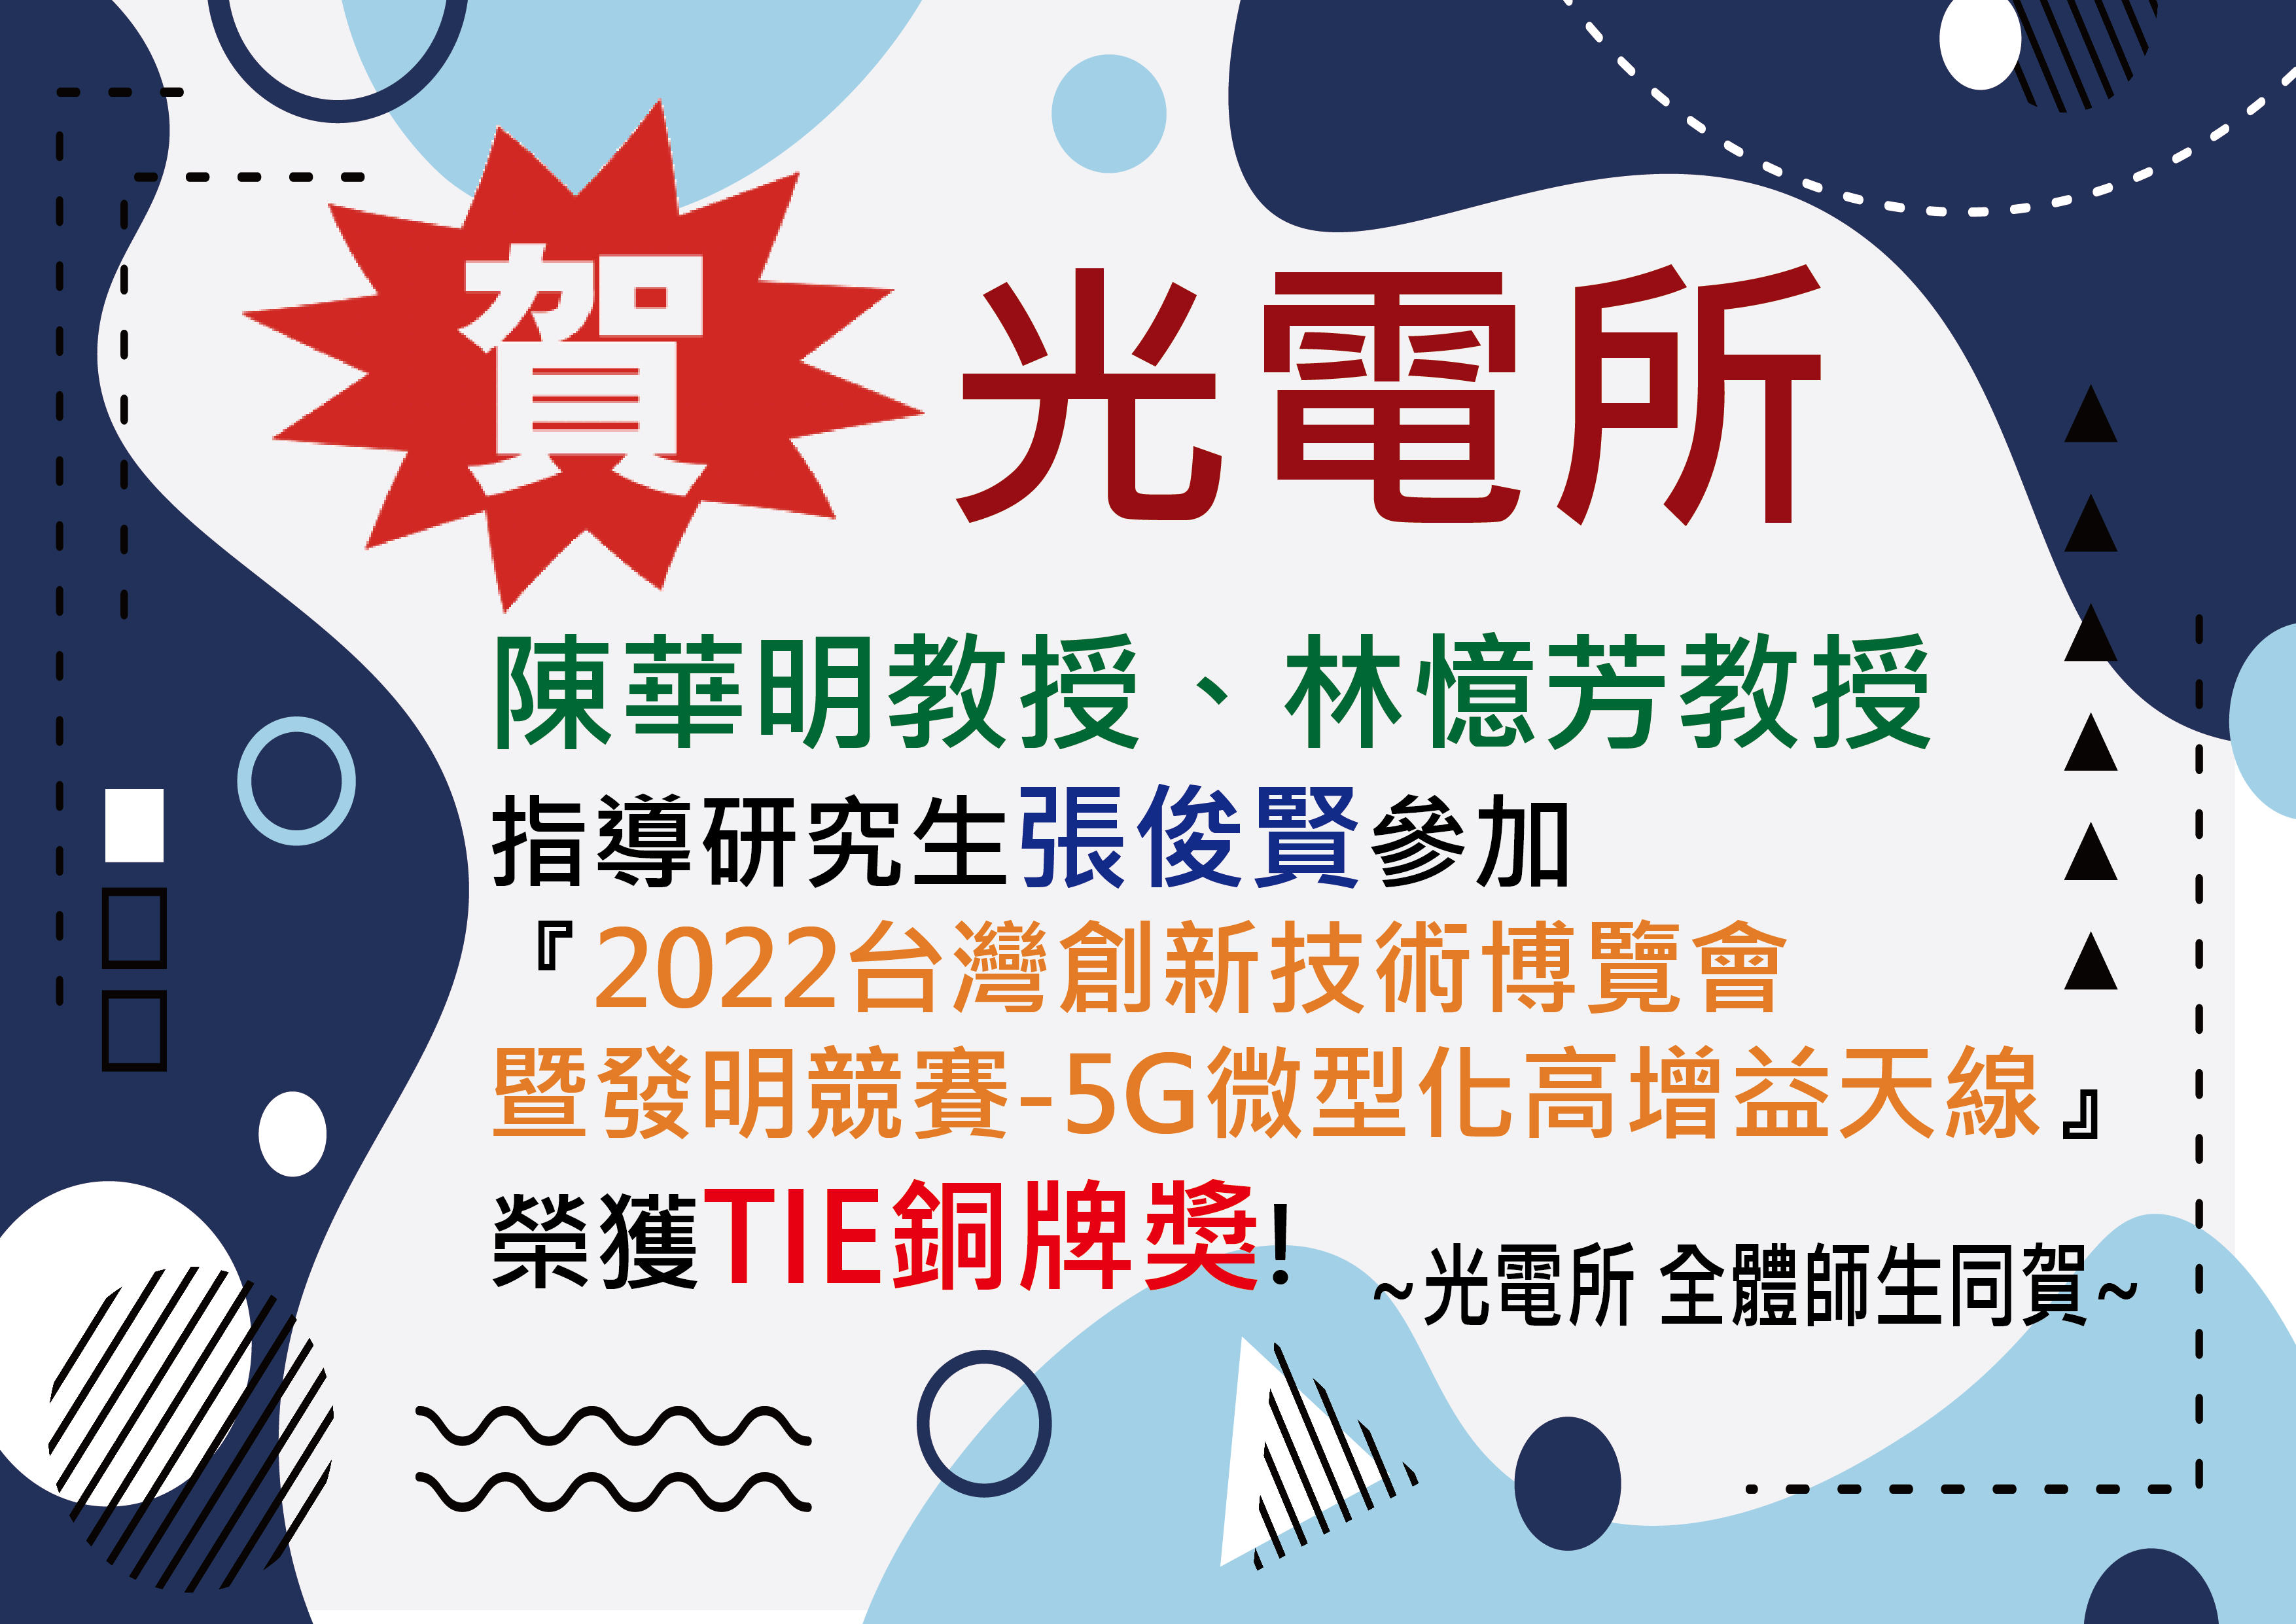 陳華明教授、林憶芳教授指導研究生張俊賢參加 『2022台灣創新技術博覽會暨發明競賽—5G微型化高增益天線』，榮獲TIE銅牌獎。